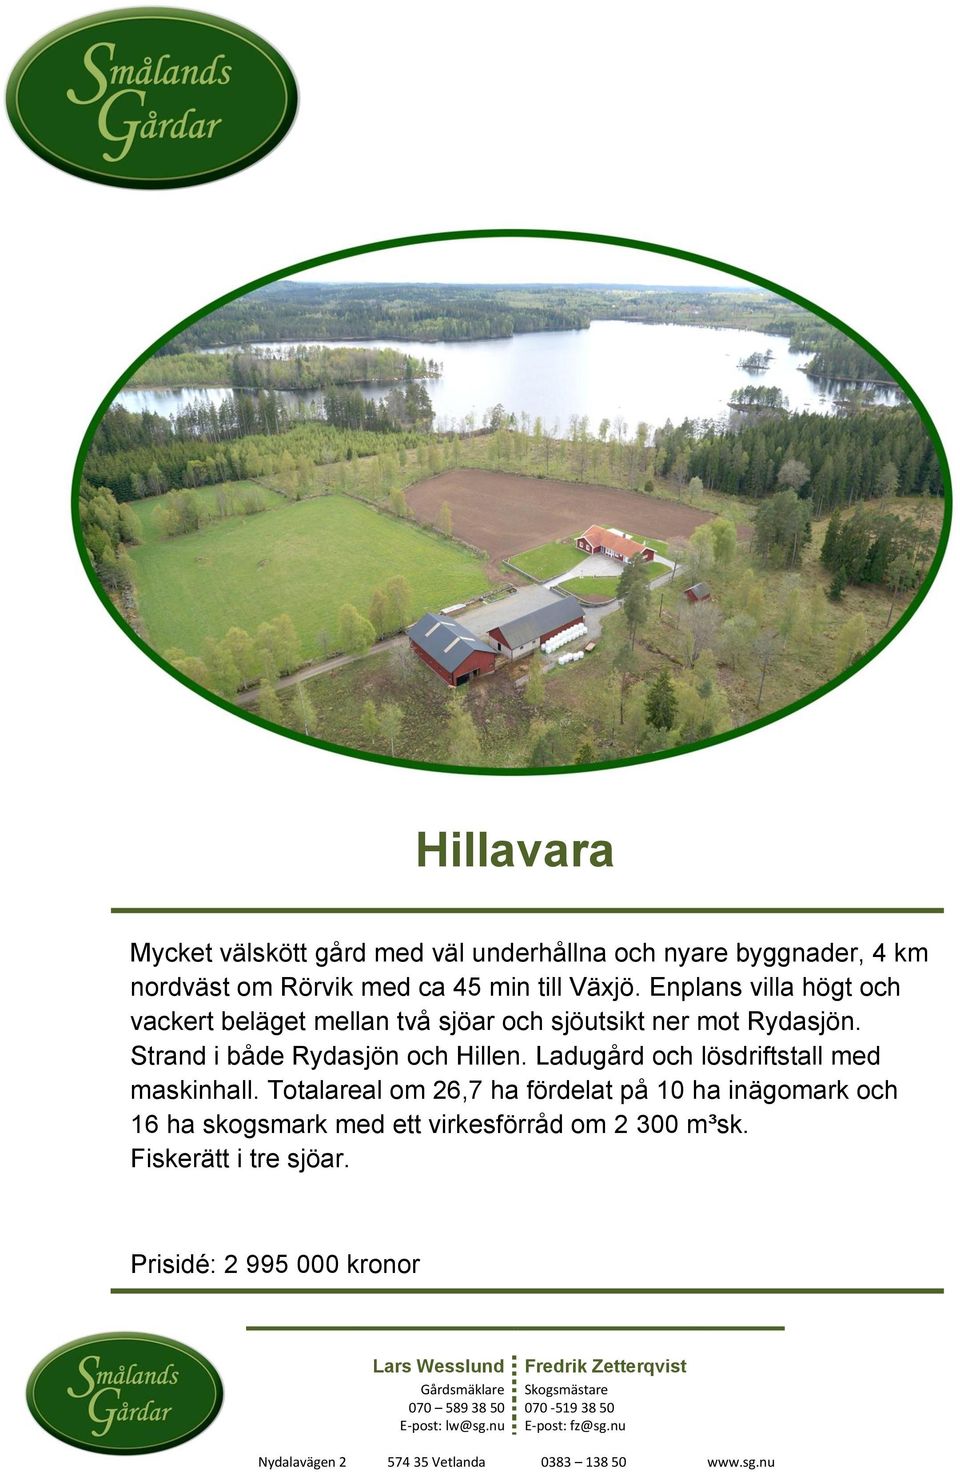 Ladugård och lösdriftstall med maskinhall. Totalareal om 26,7 ha fördelat på 10 ha inägomark och 16 ha skogsmark med ett virkesförråd om 2 300 m³sk.